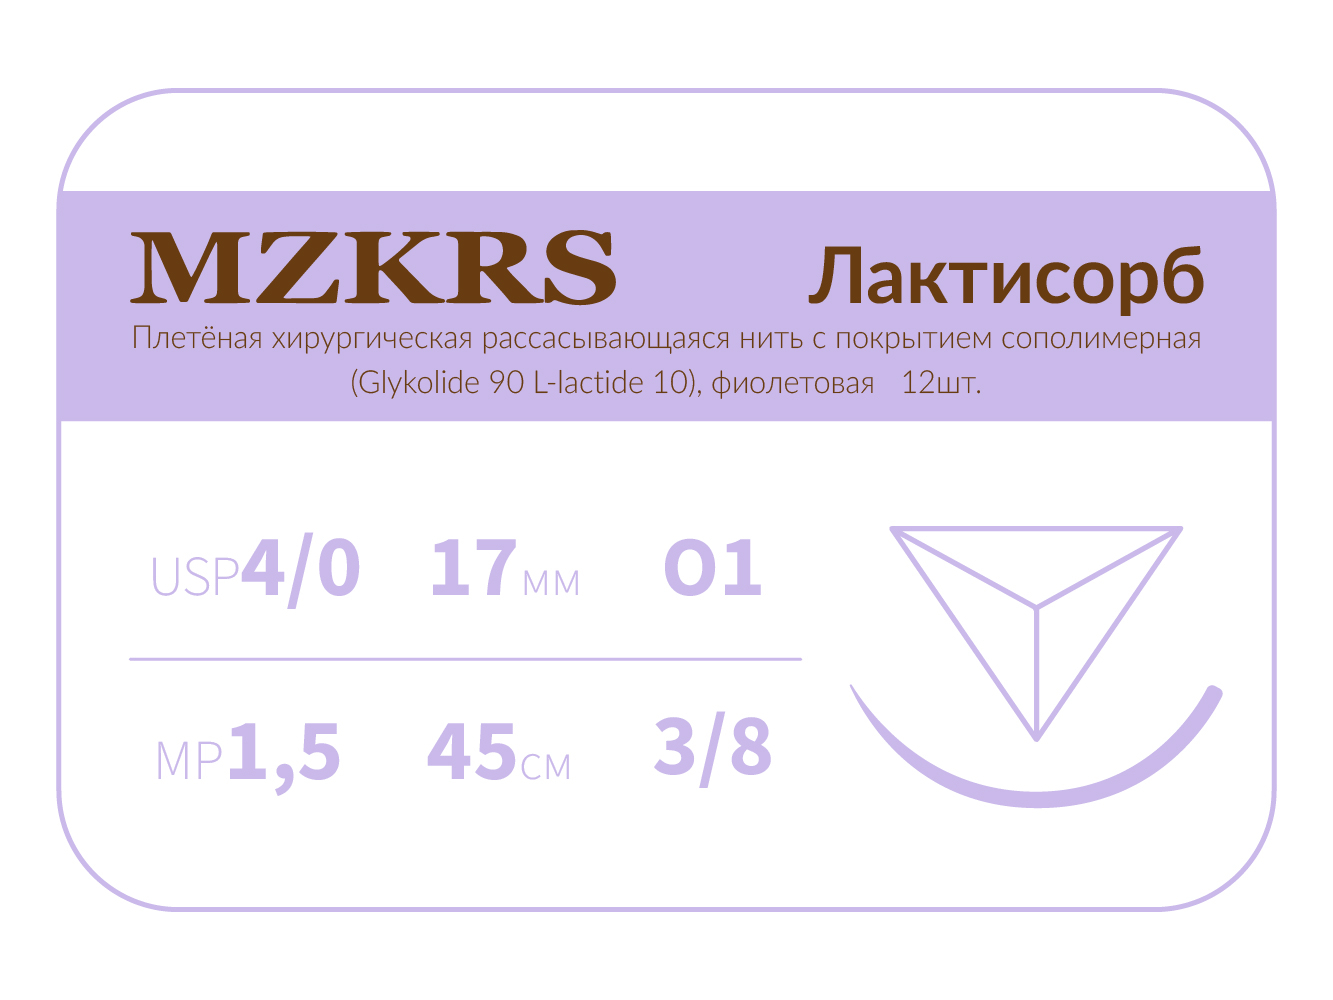 1712О1 Premium-4/0 (1.5)75 ПГЛ ЛАКТИСОРБ хирургическая нить сополимерная, обратно-режущая игла, MZKRS (Россия)